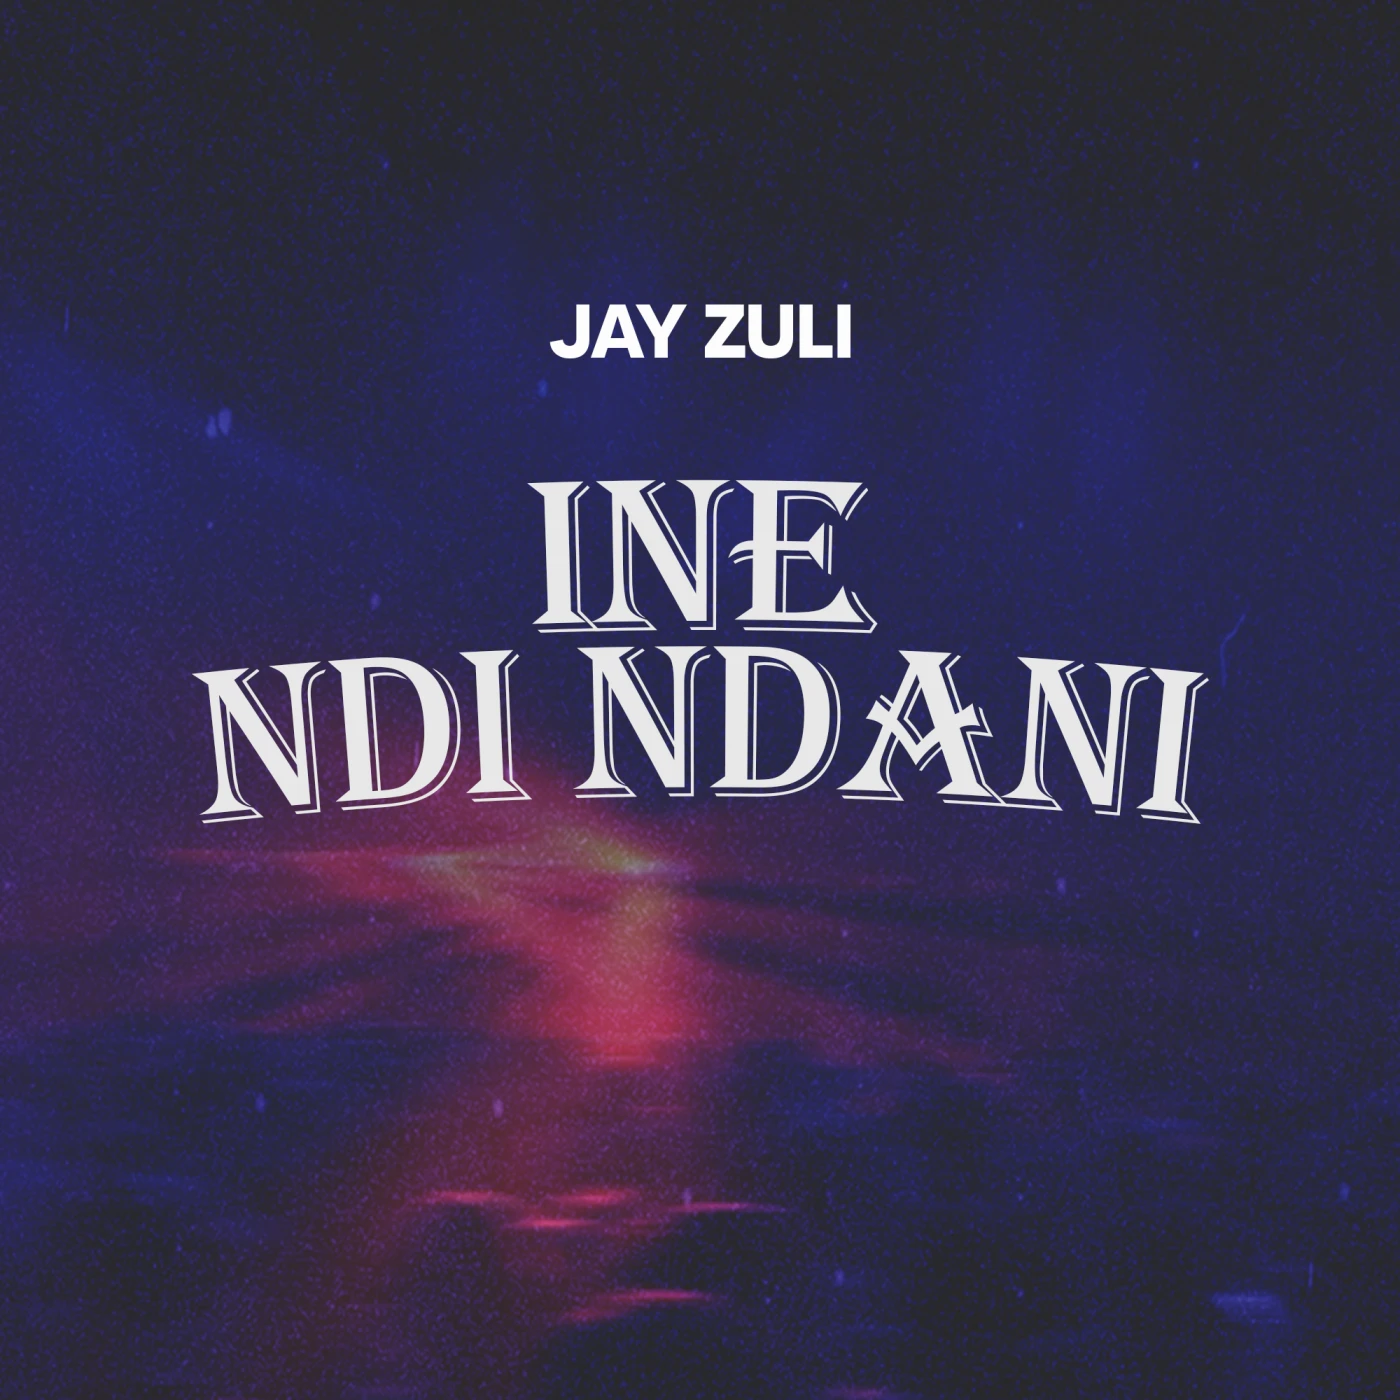 1-ine-ndi-ndani-jay-zuli-just malawi